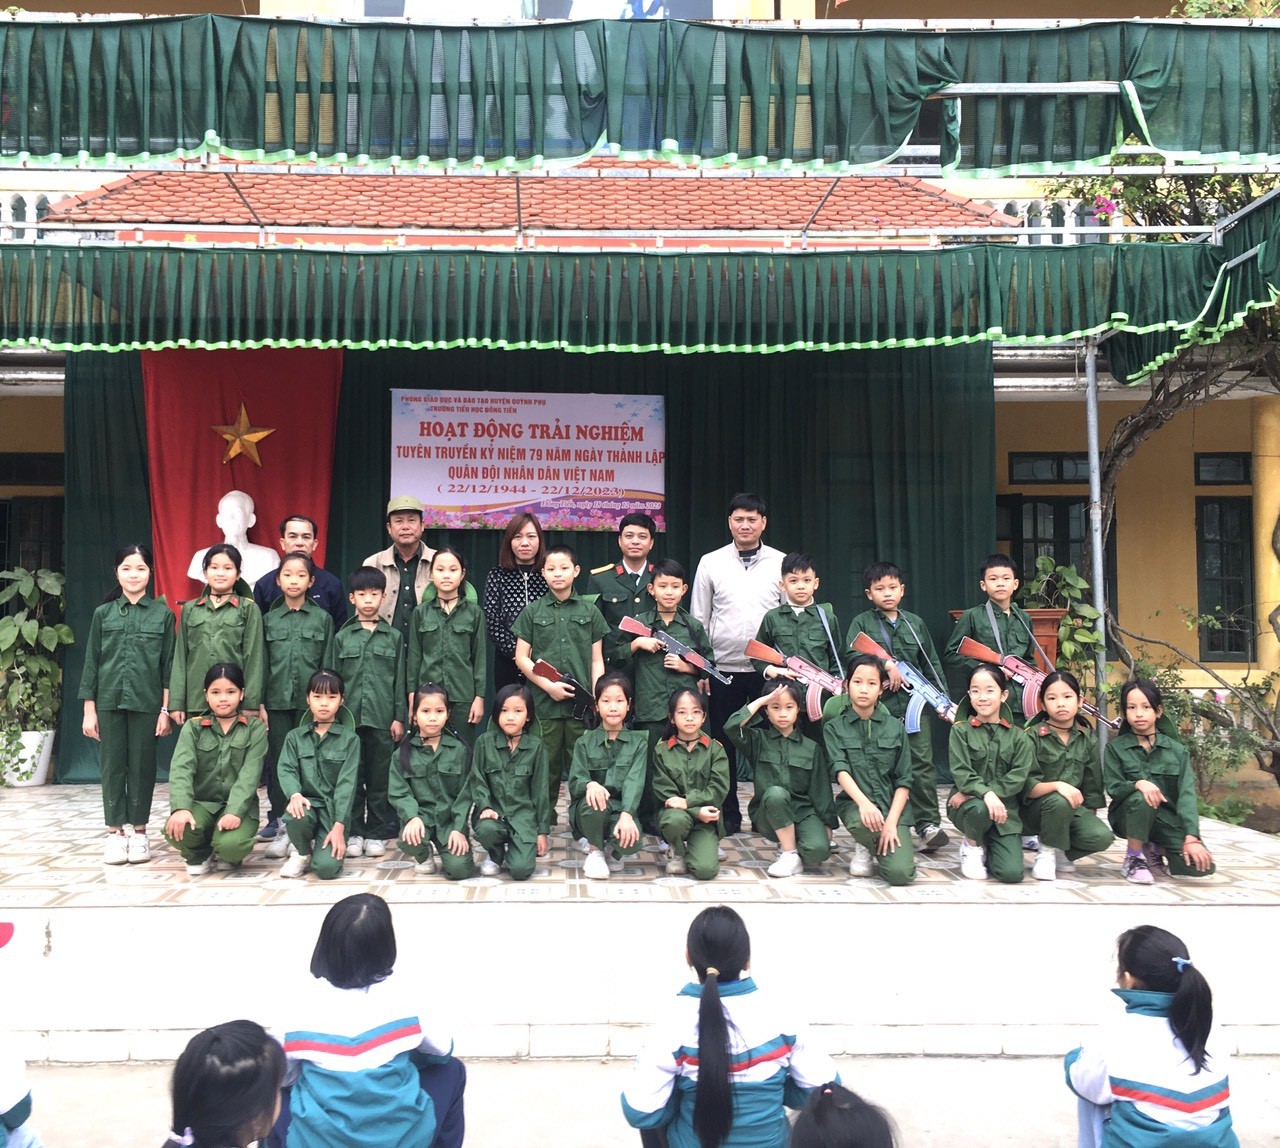 Hoạt động trải nghiệm chào mừng kỉ niệm 79 năm ngày thành lập Quân đội nhân dân Việt Nam(22/12/1944 – 22/12/2023)  tại Liên đội trường Tiểu học Đồng Tiến